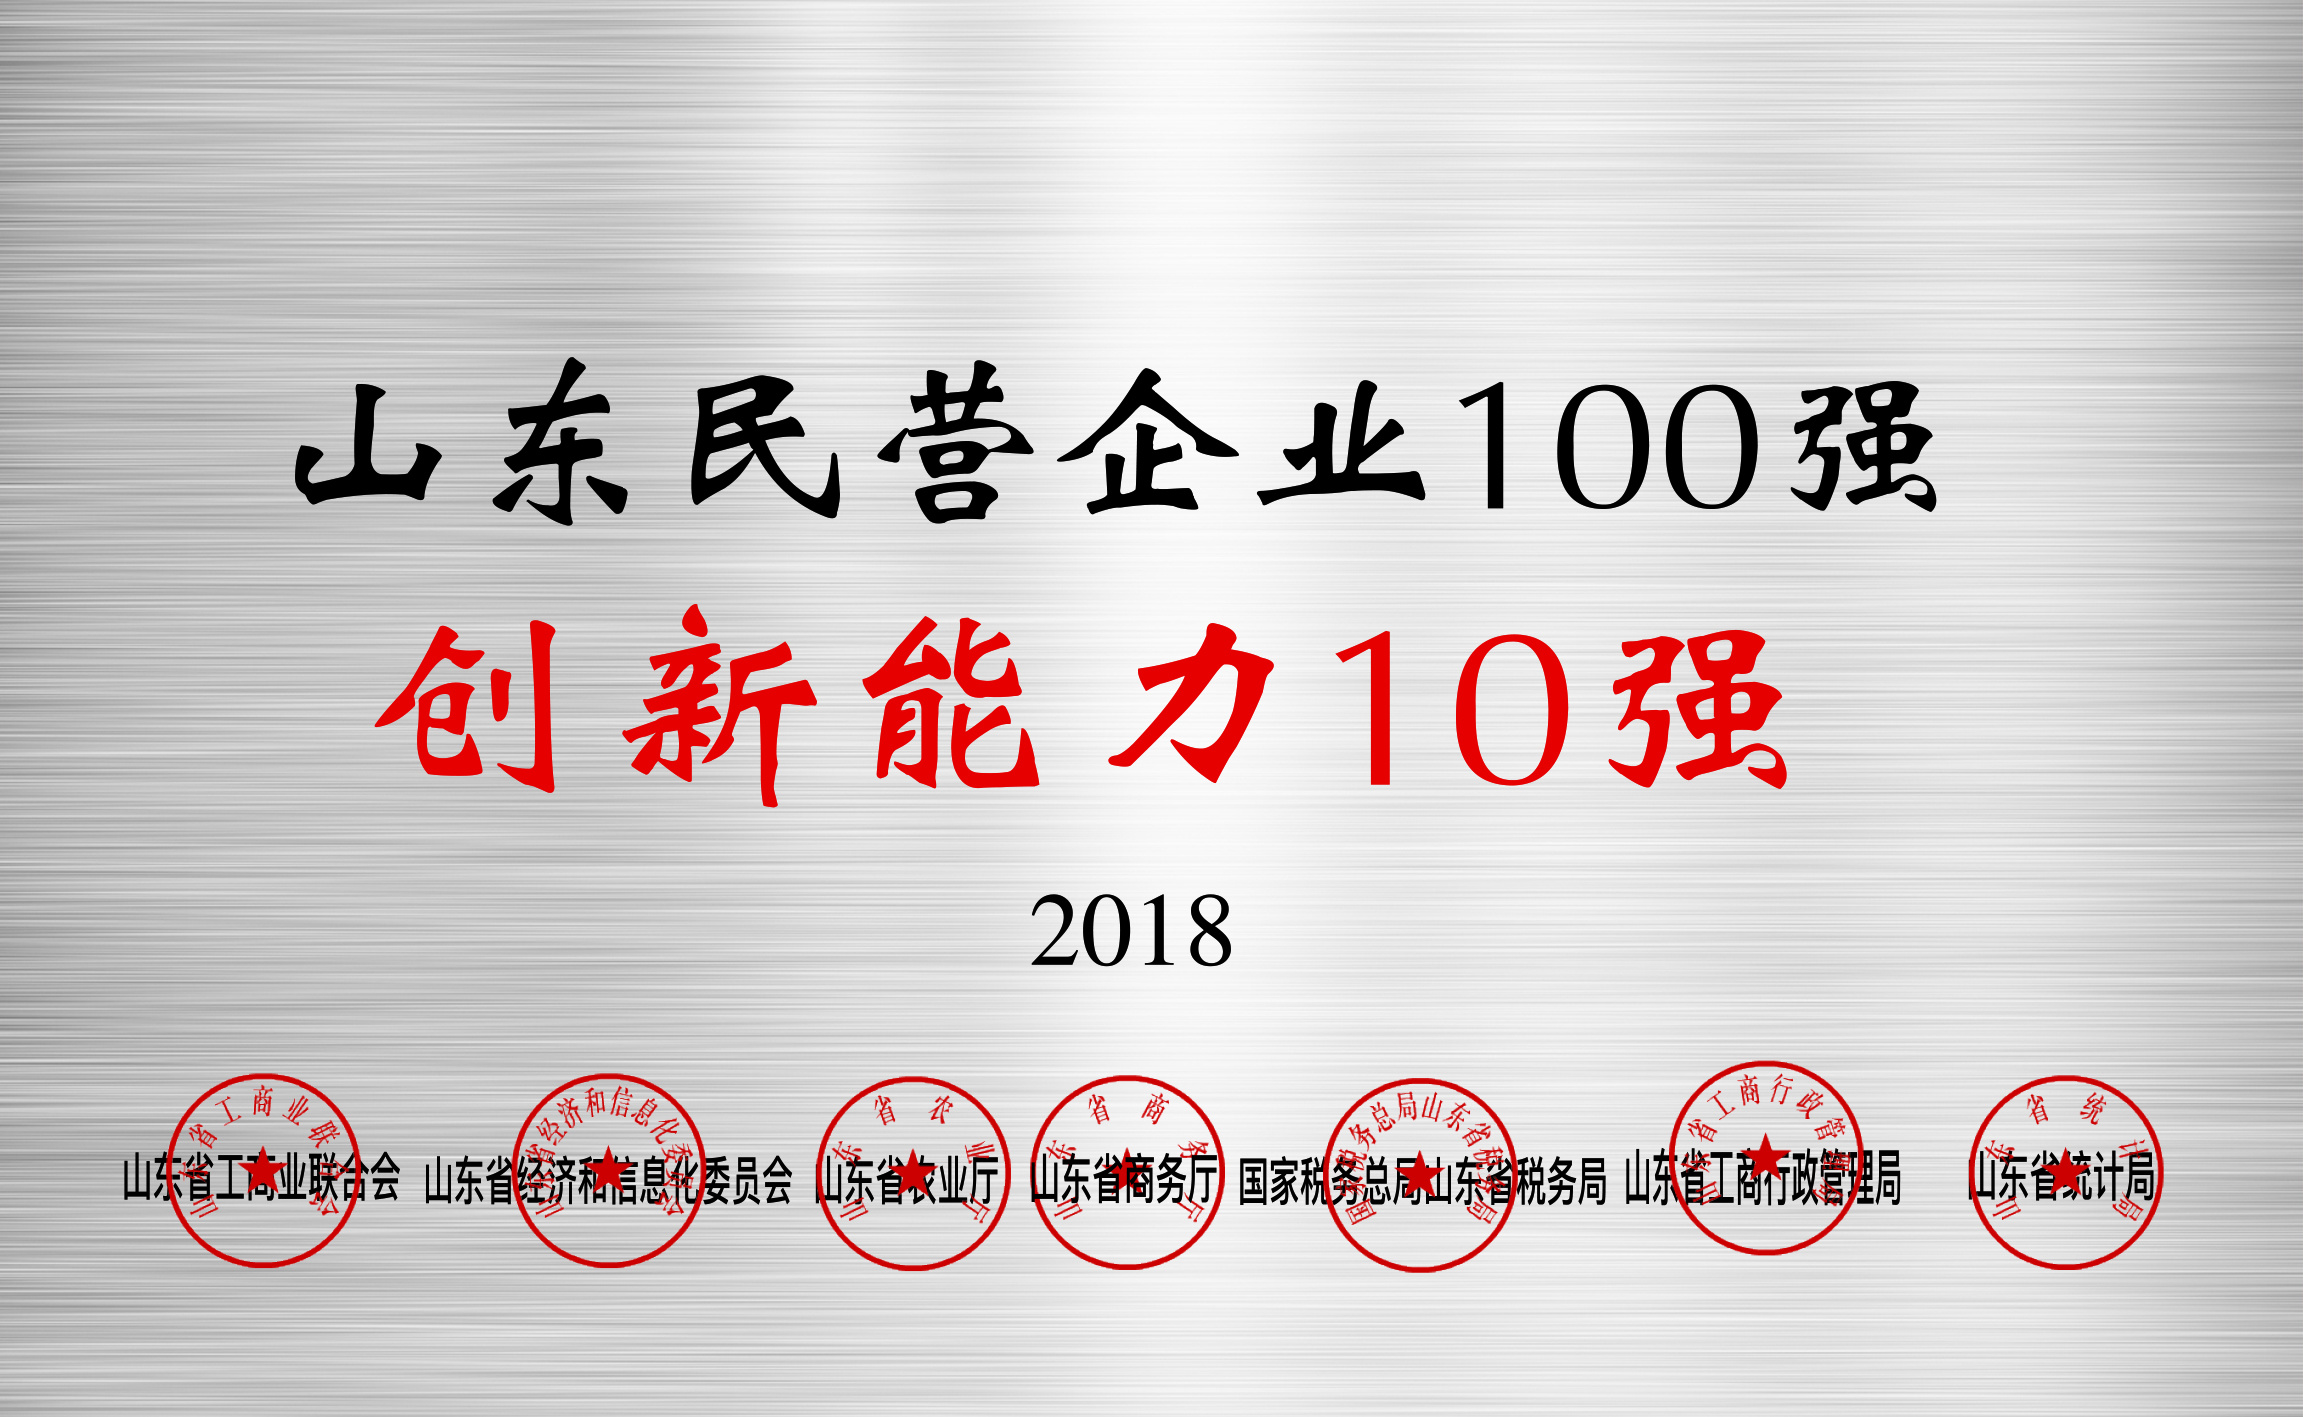 山东民营企业100强创新能力10强